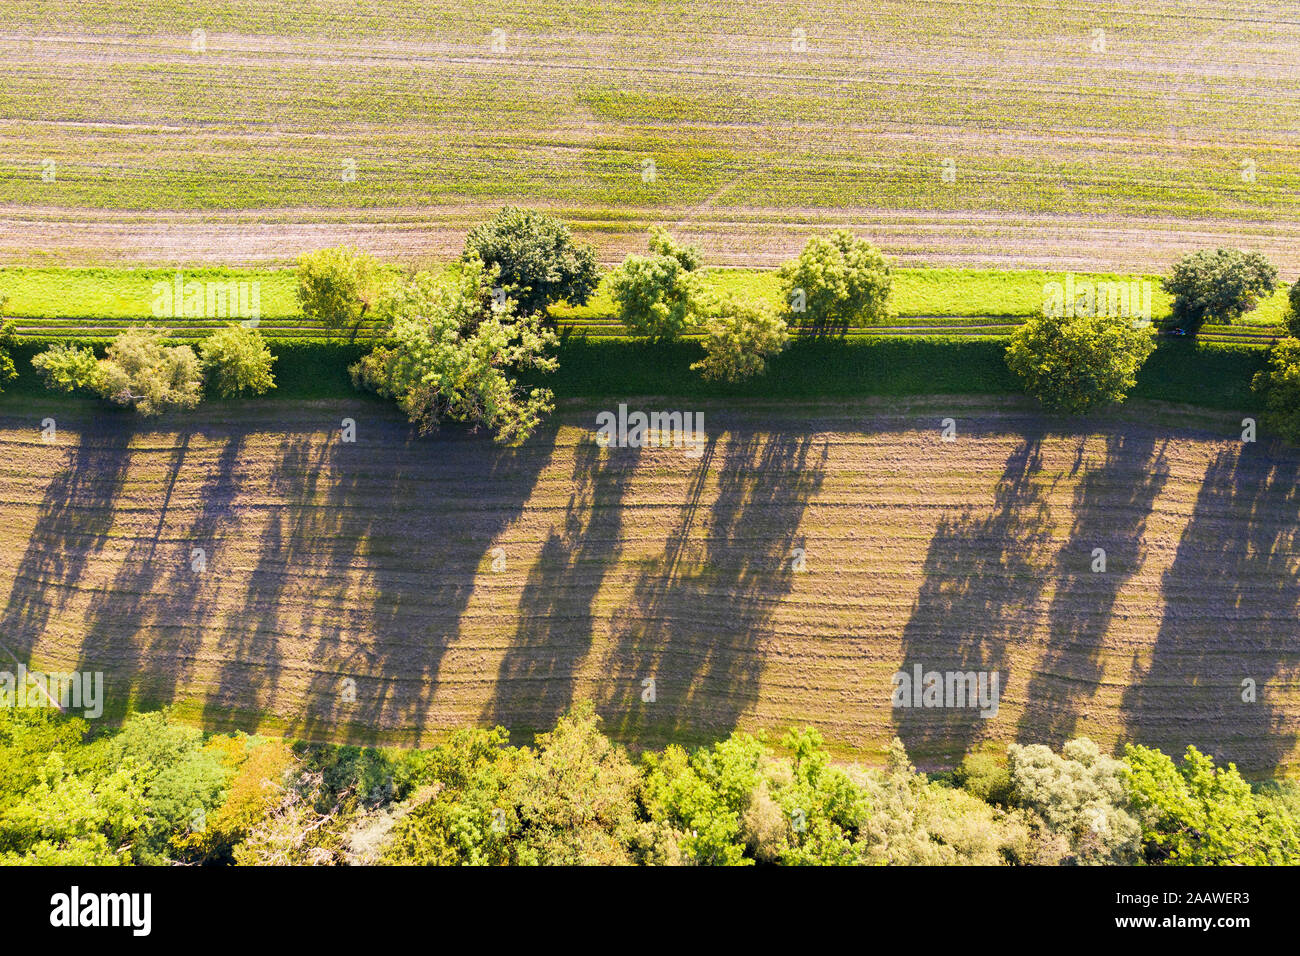 In Germania, in Baviera, Schftlarn, vista aerea del campo Foto Stock